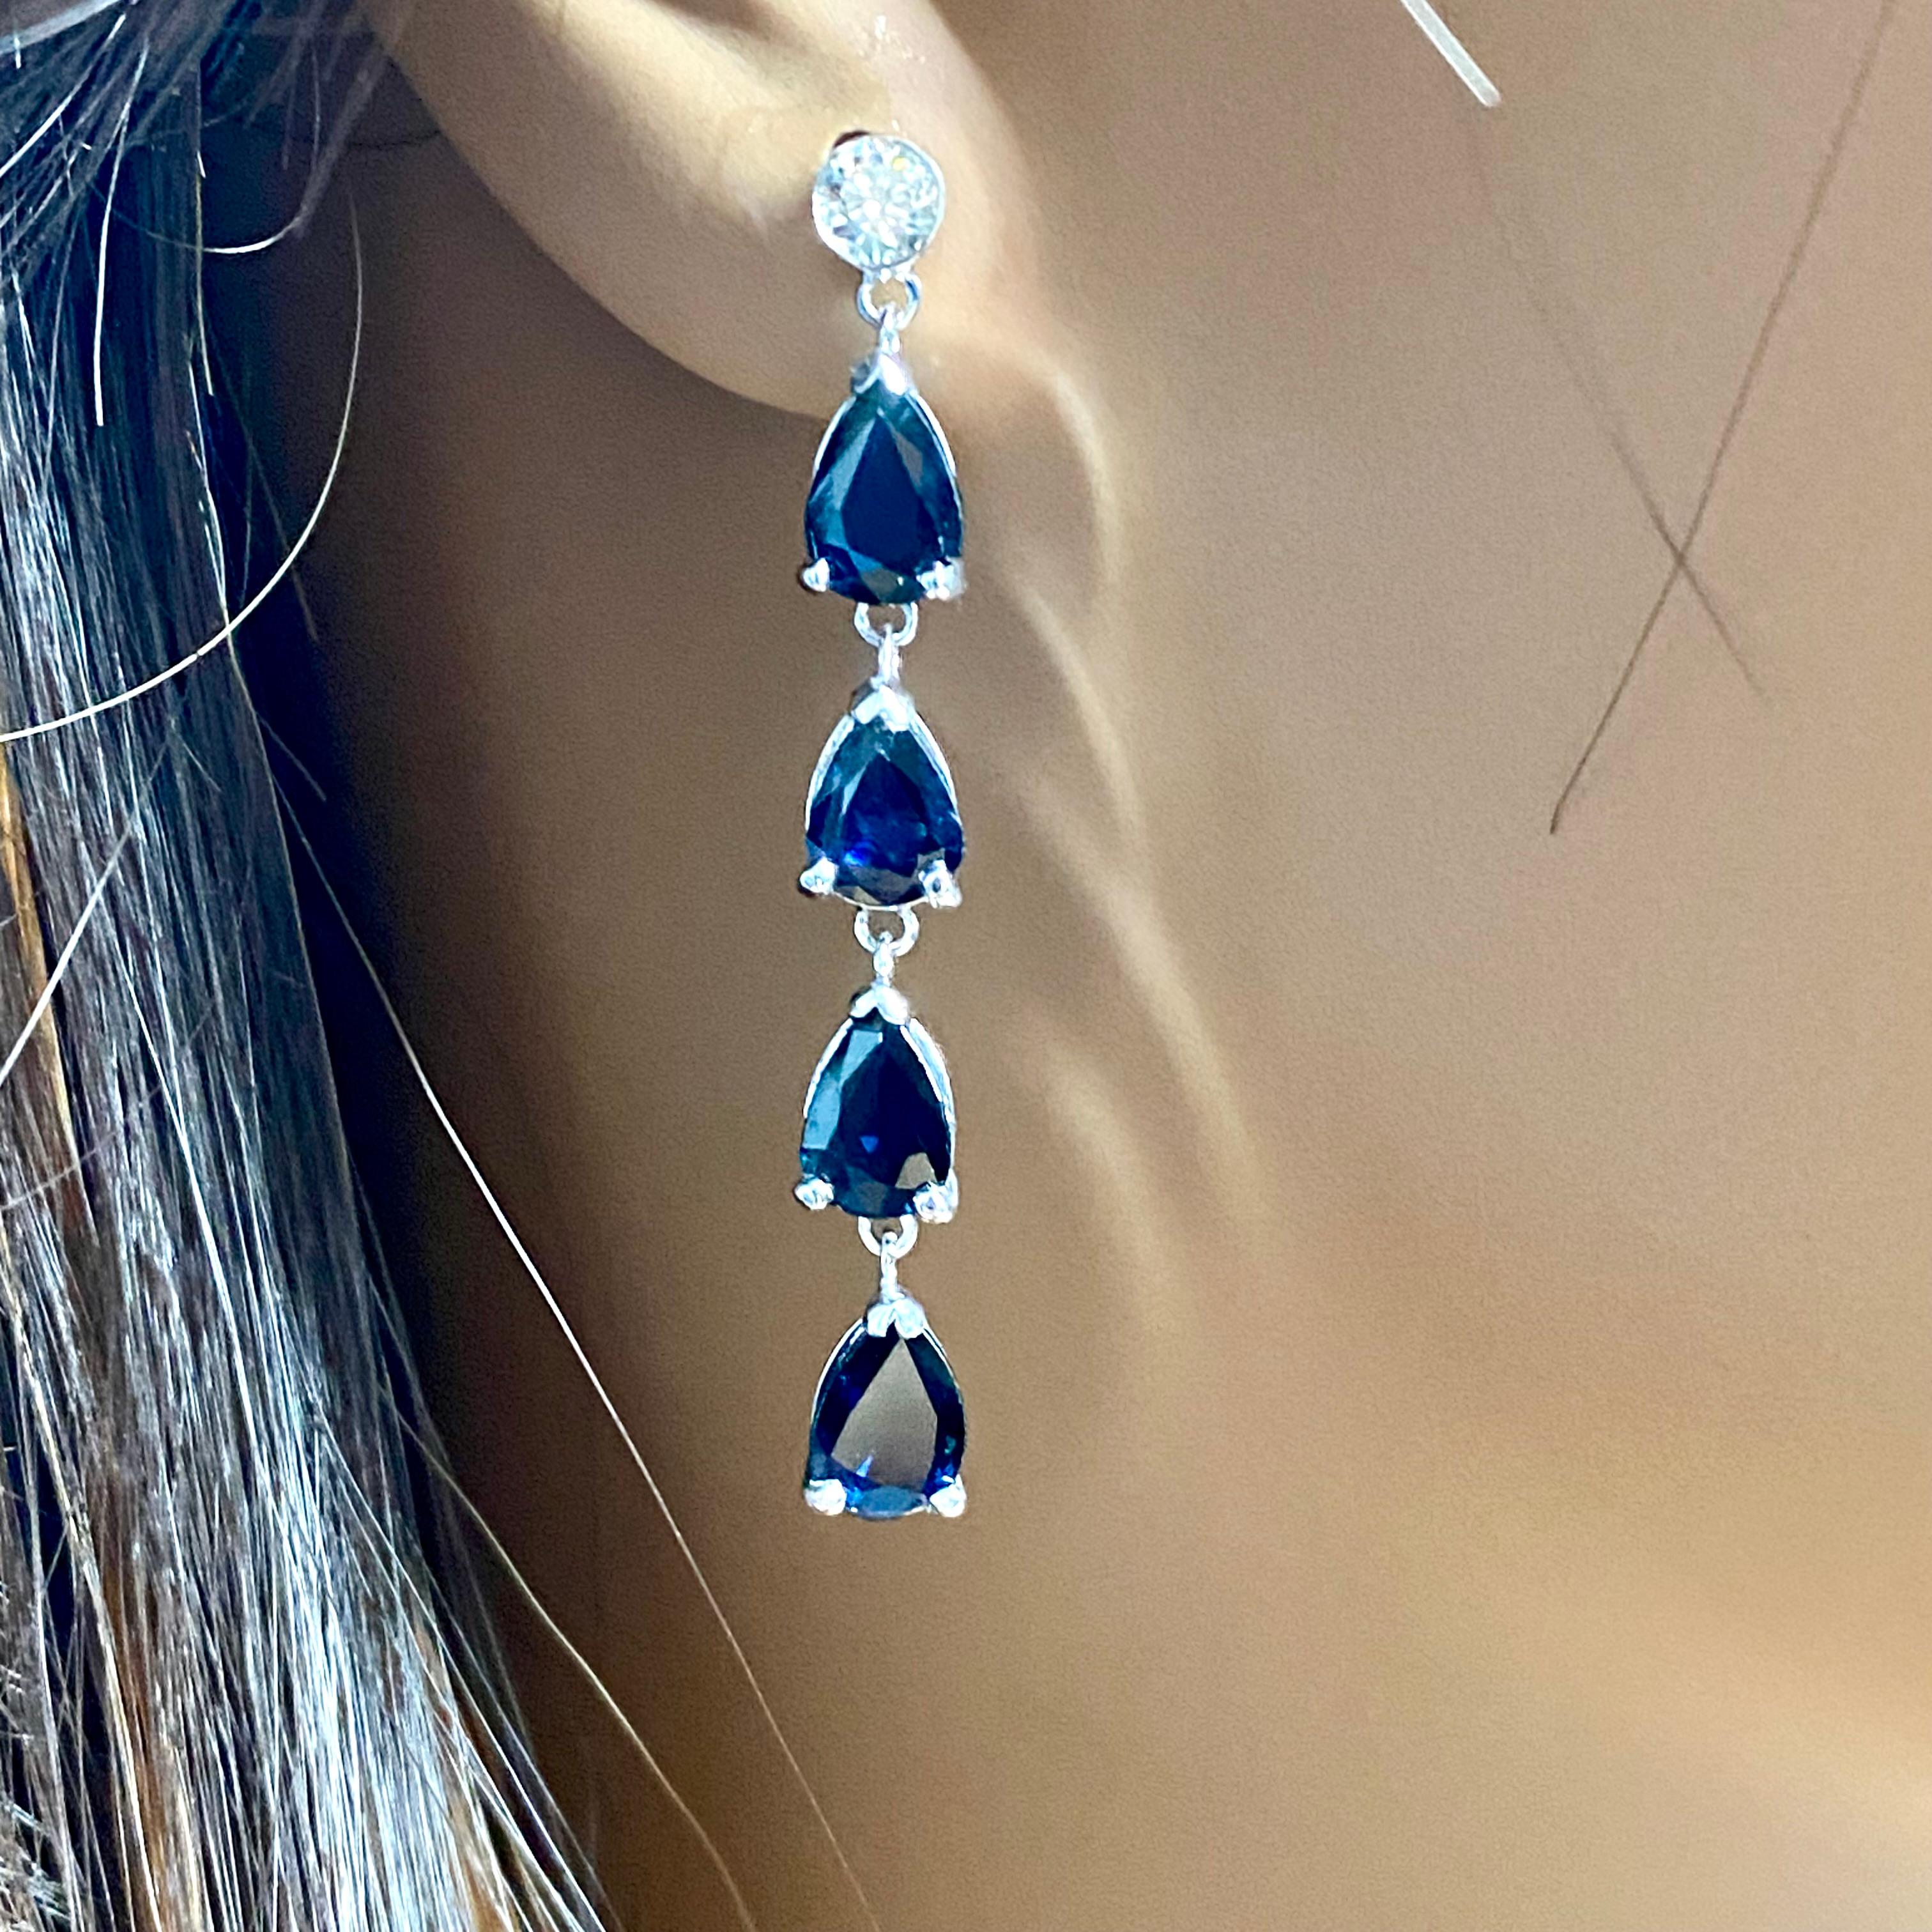 2 carat sapphire earrings